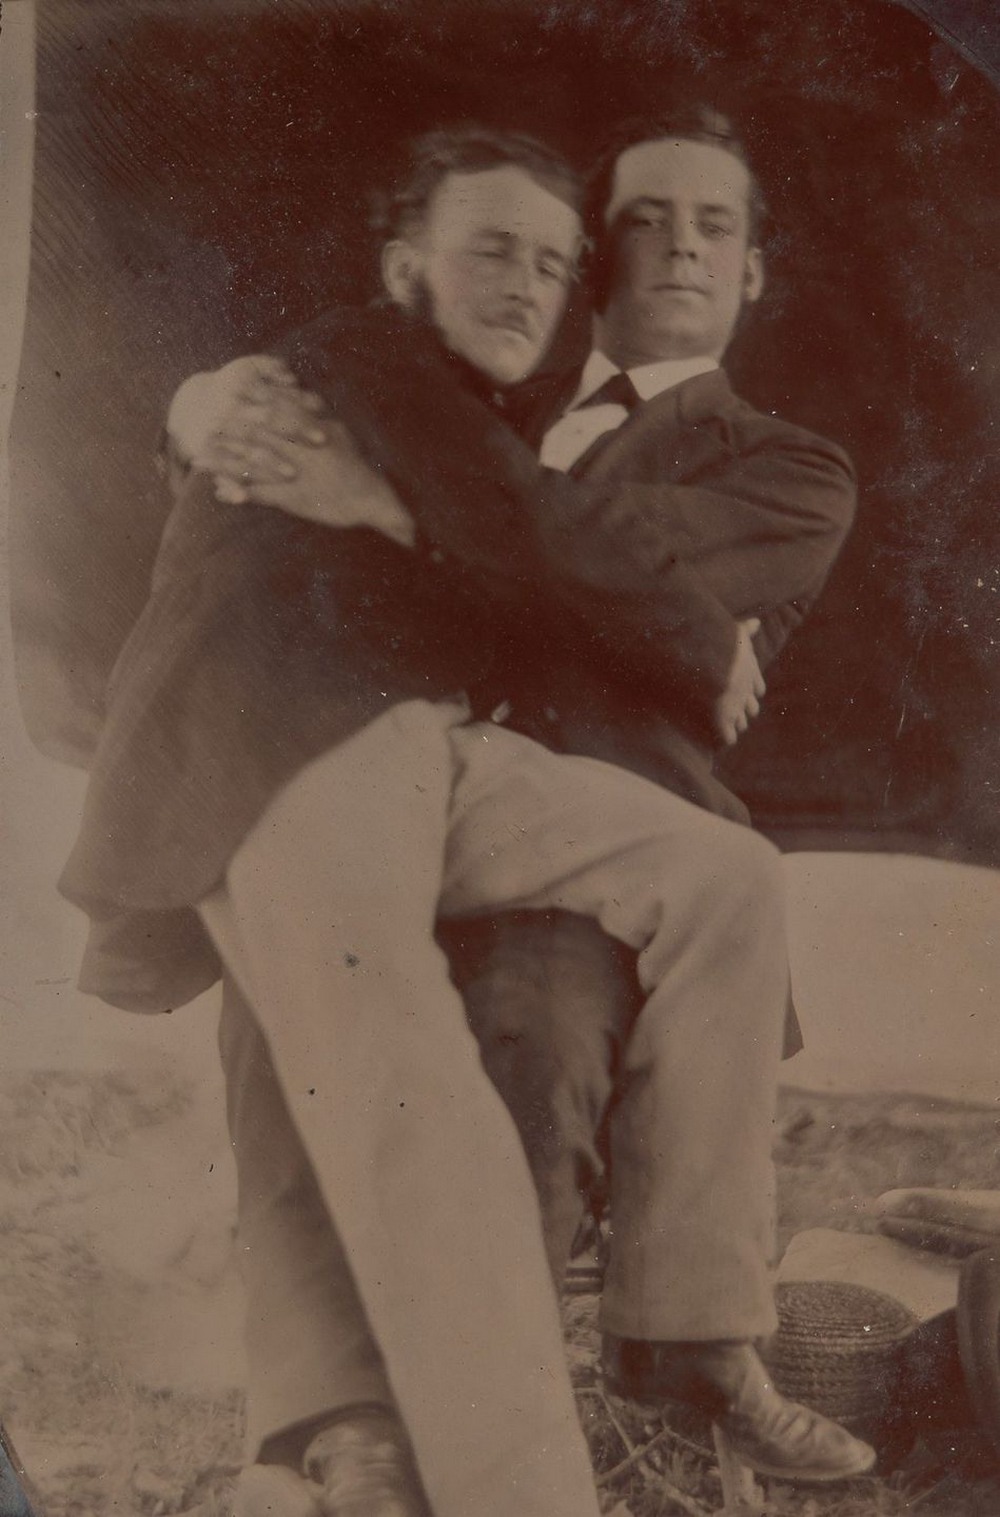 Броманс в викторианскую эпоху: интимные мужские объятия в редких фотографиях конца 1800-х годов  12